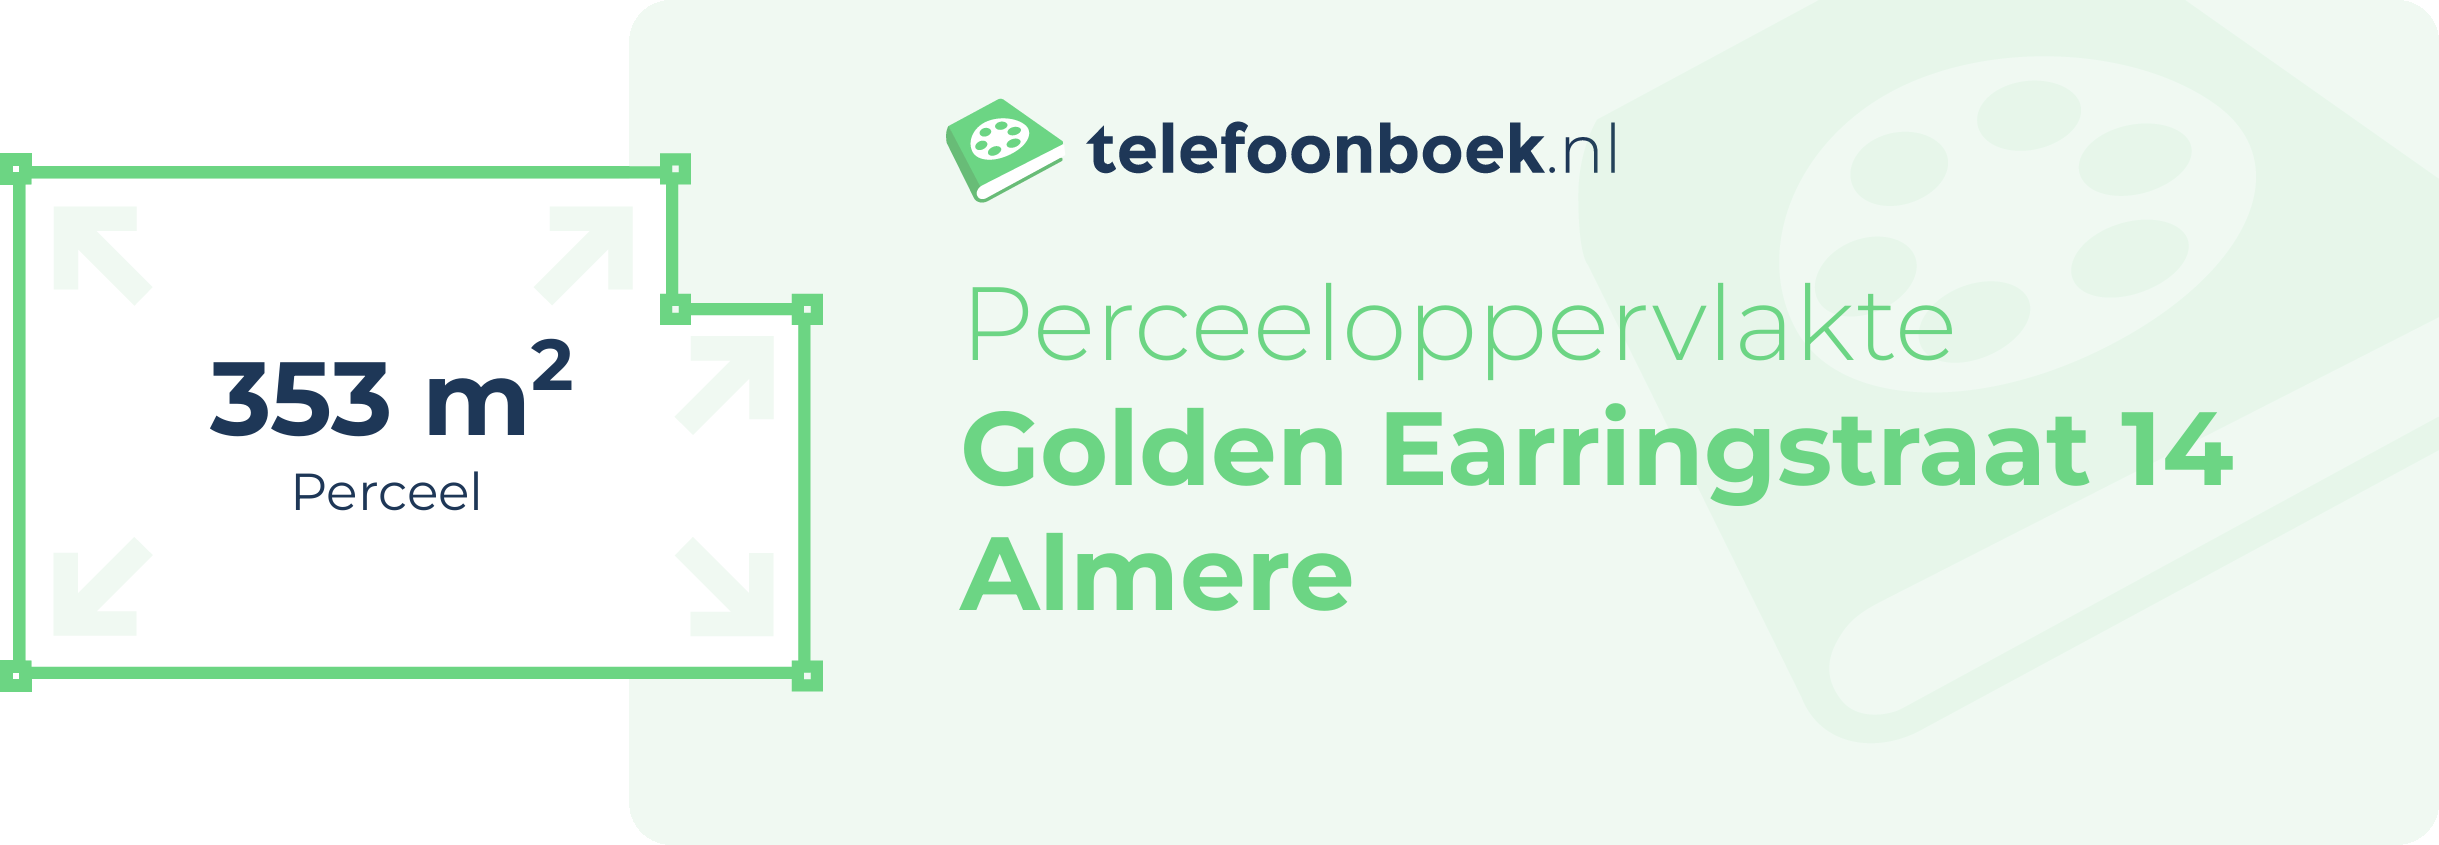 Perceeloppervlakte Golden Earringstraat 14 Almere